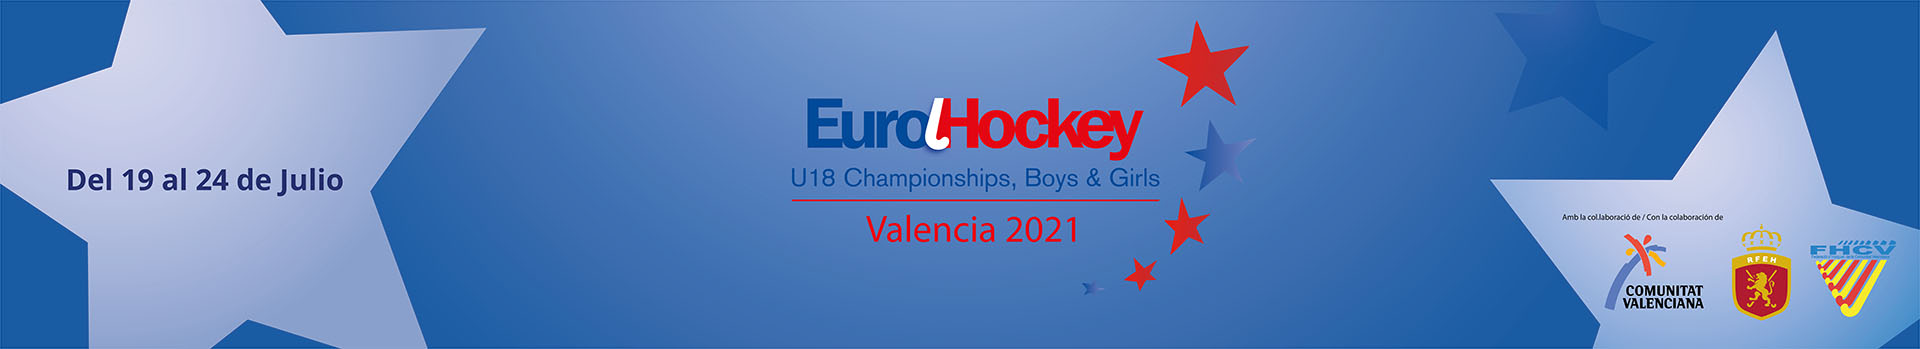  compra tu entrada de los partidos del EUROHOCKEY U18 BOYS AND GIRLS VALENCIA 2021